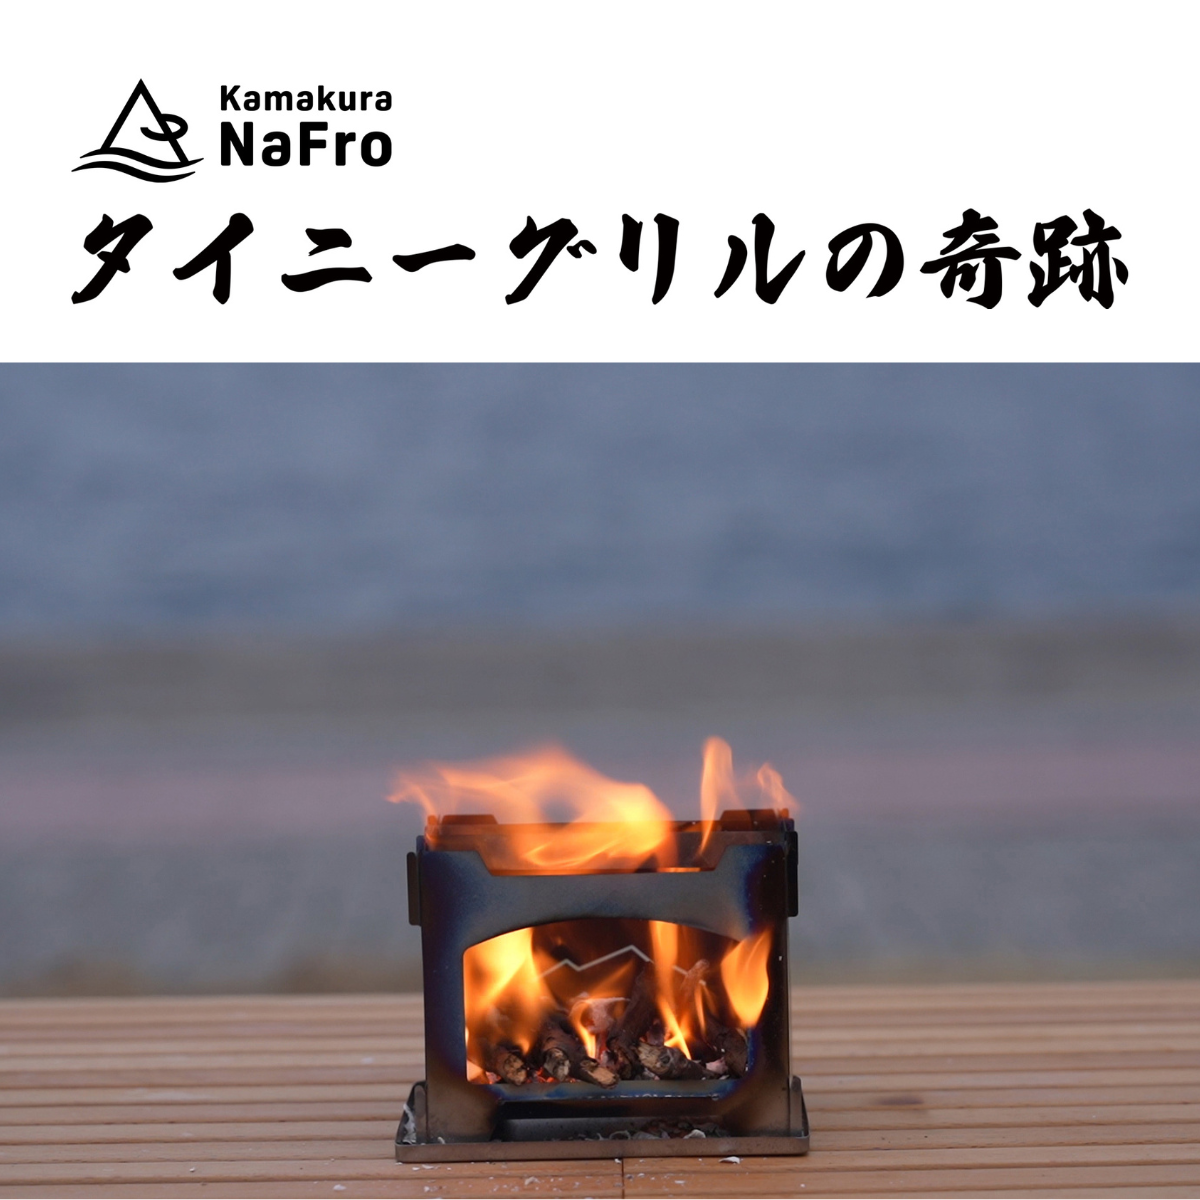 タイニーグリルの奇跡 – 鎌倉NaFroオフィシャルサイト